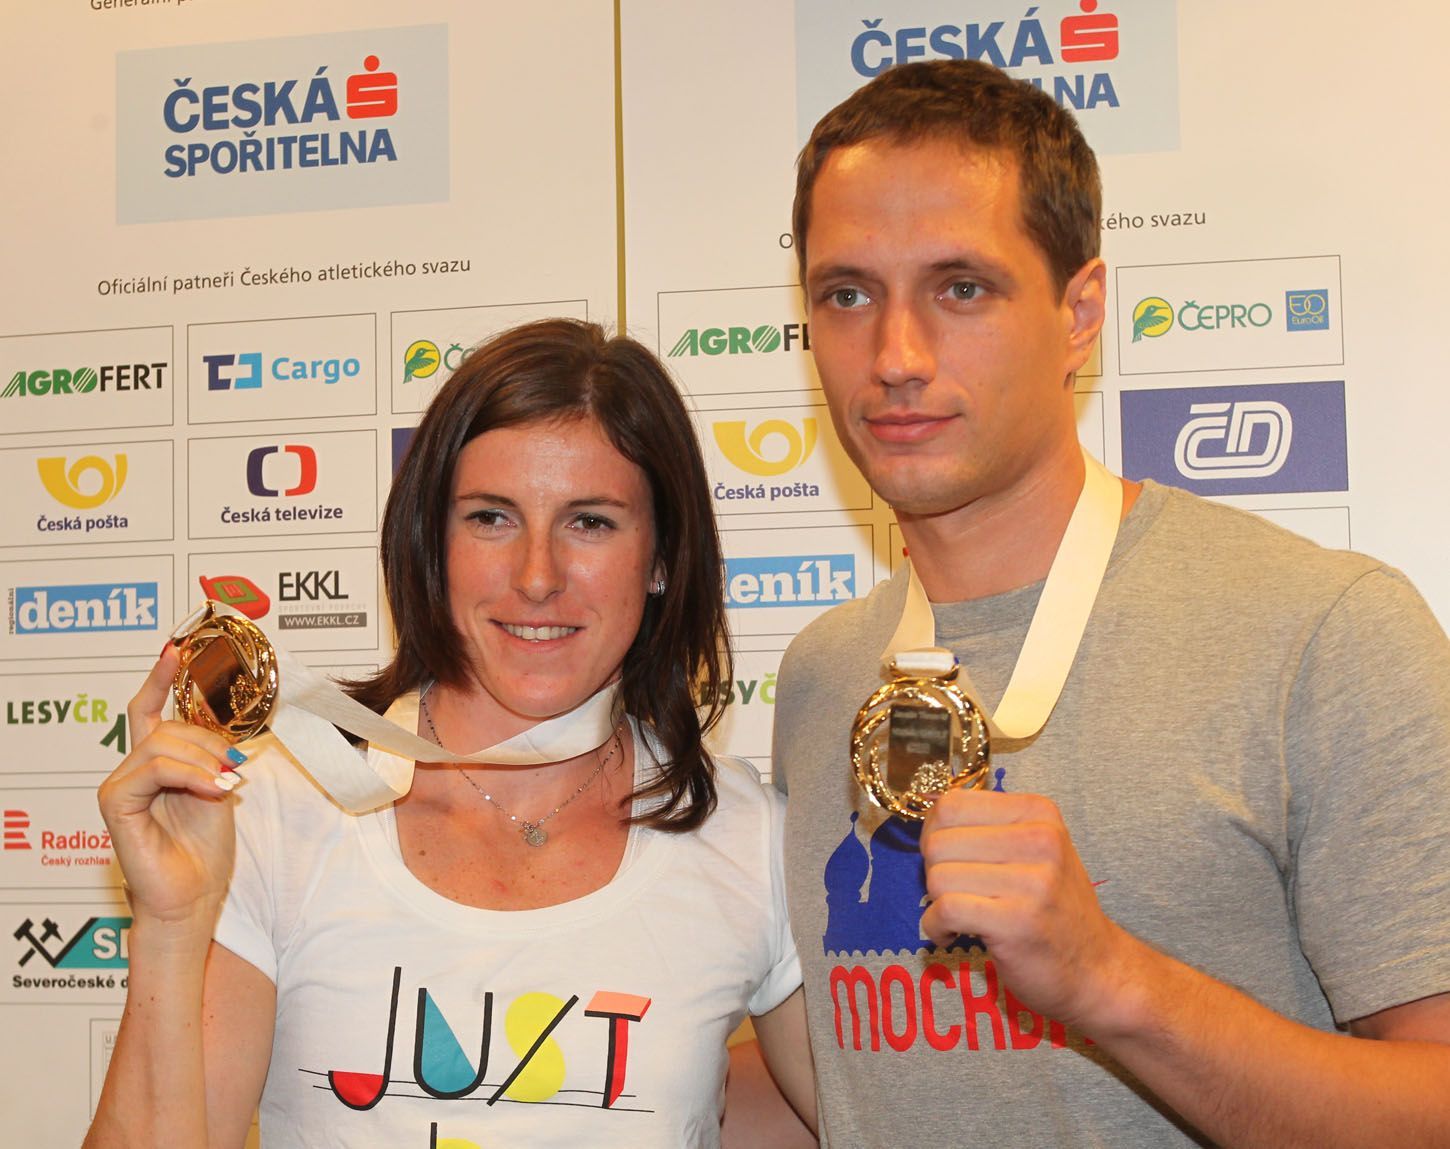 Vítězslav Veselý a Zuzana Hejnová přiletěli z MS v Moskvě 2013